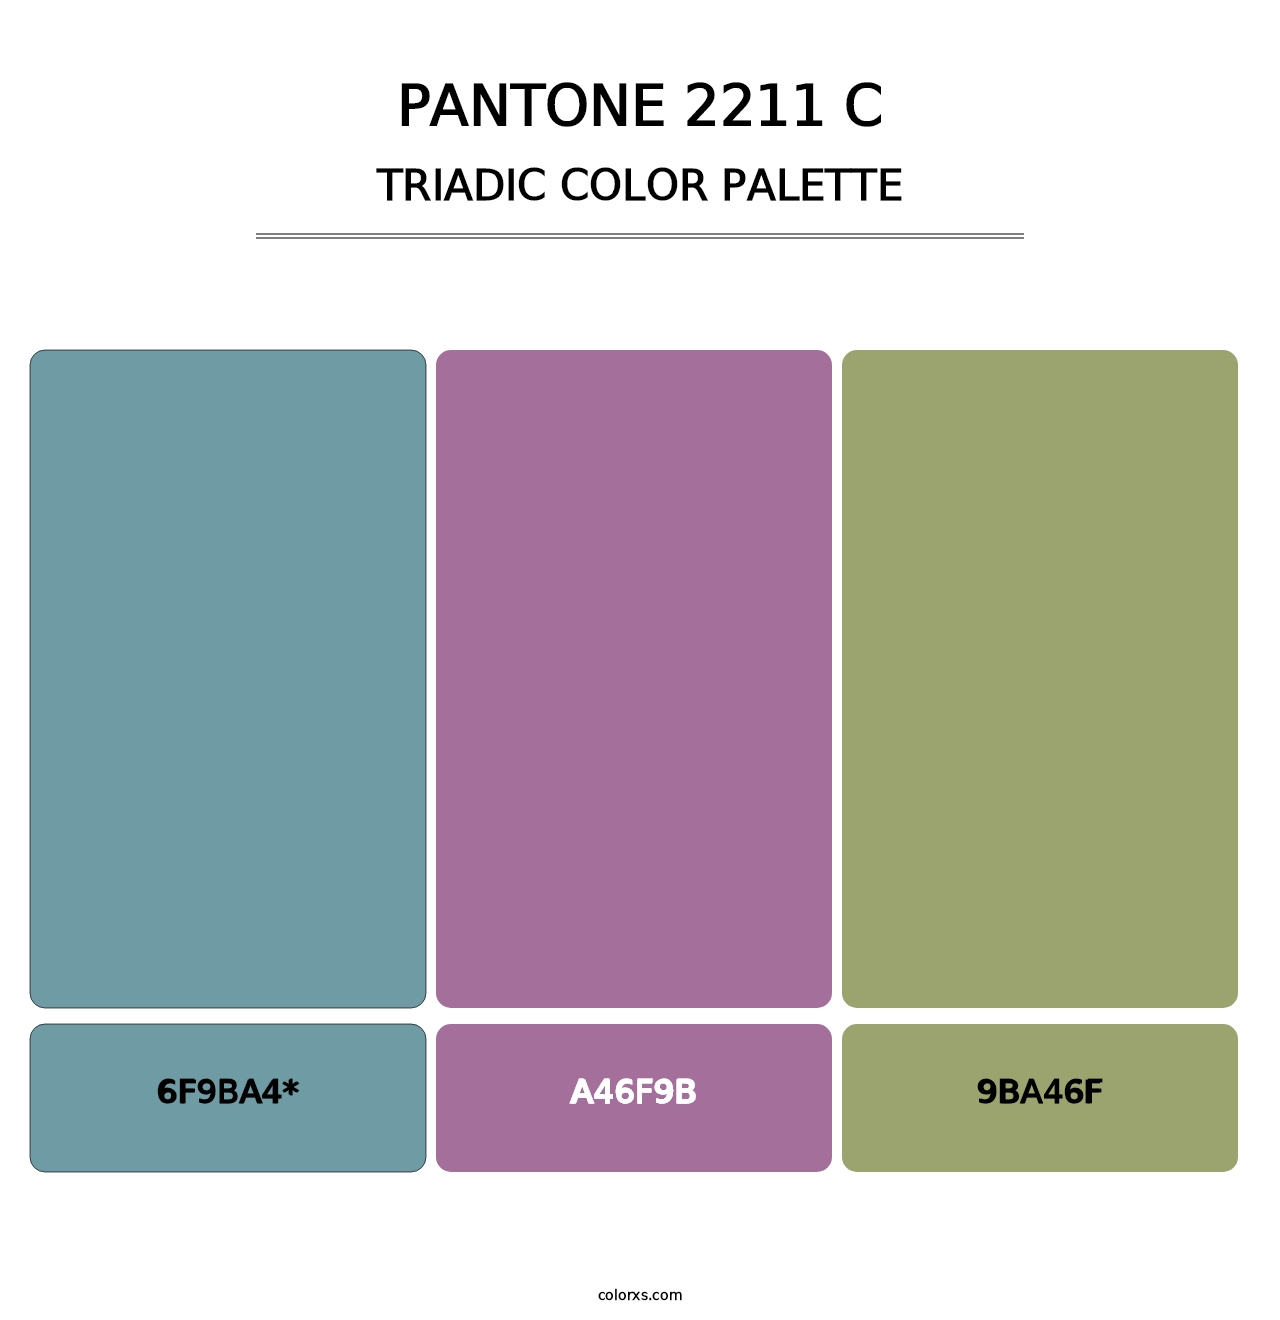 PANTONE 2211 C - Triadic Color Palette